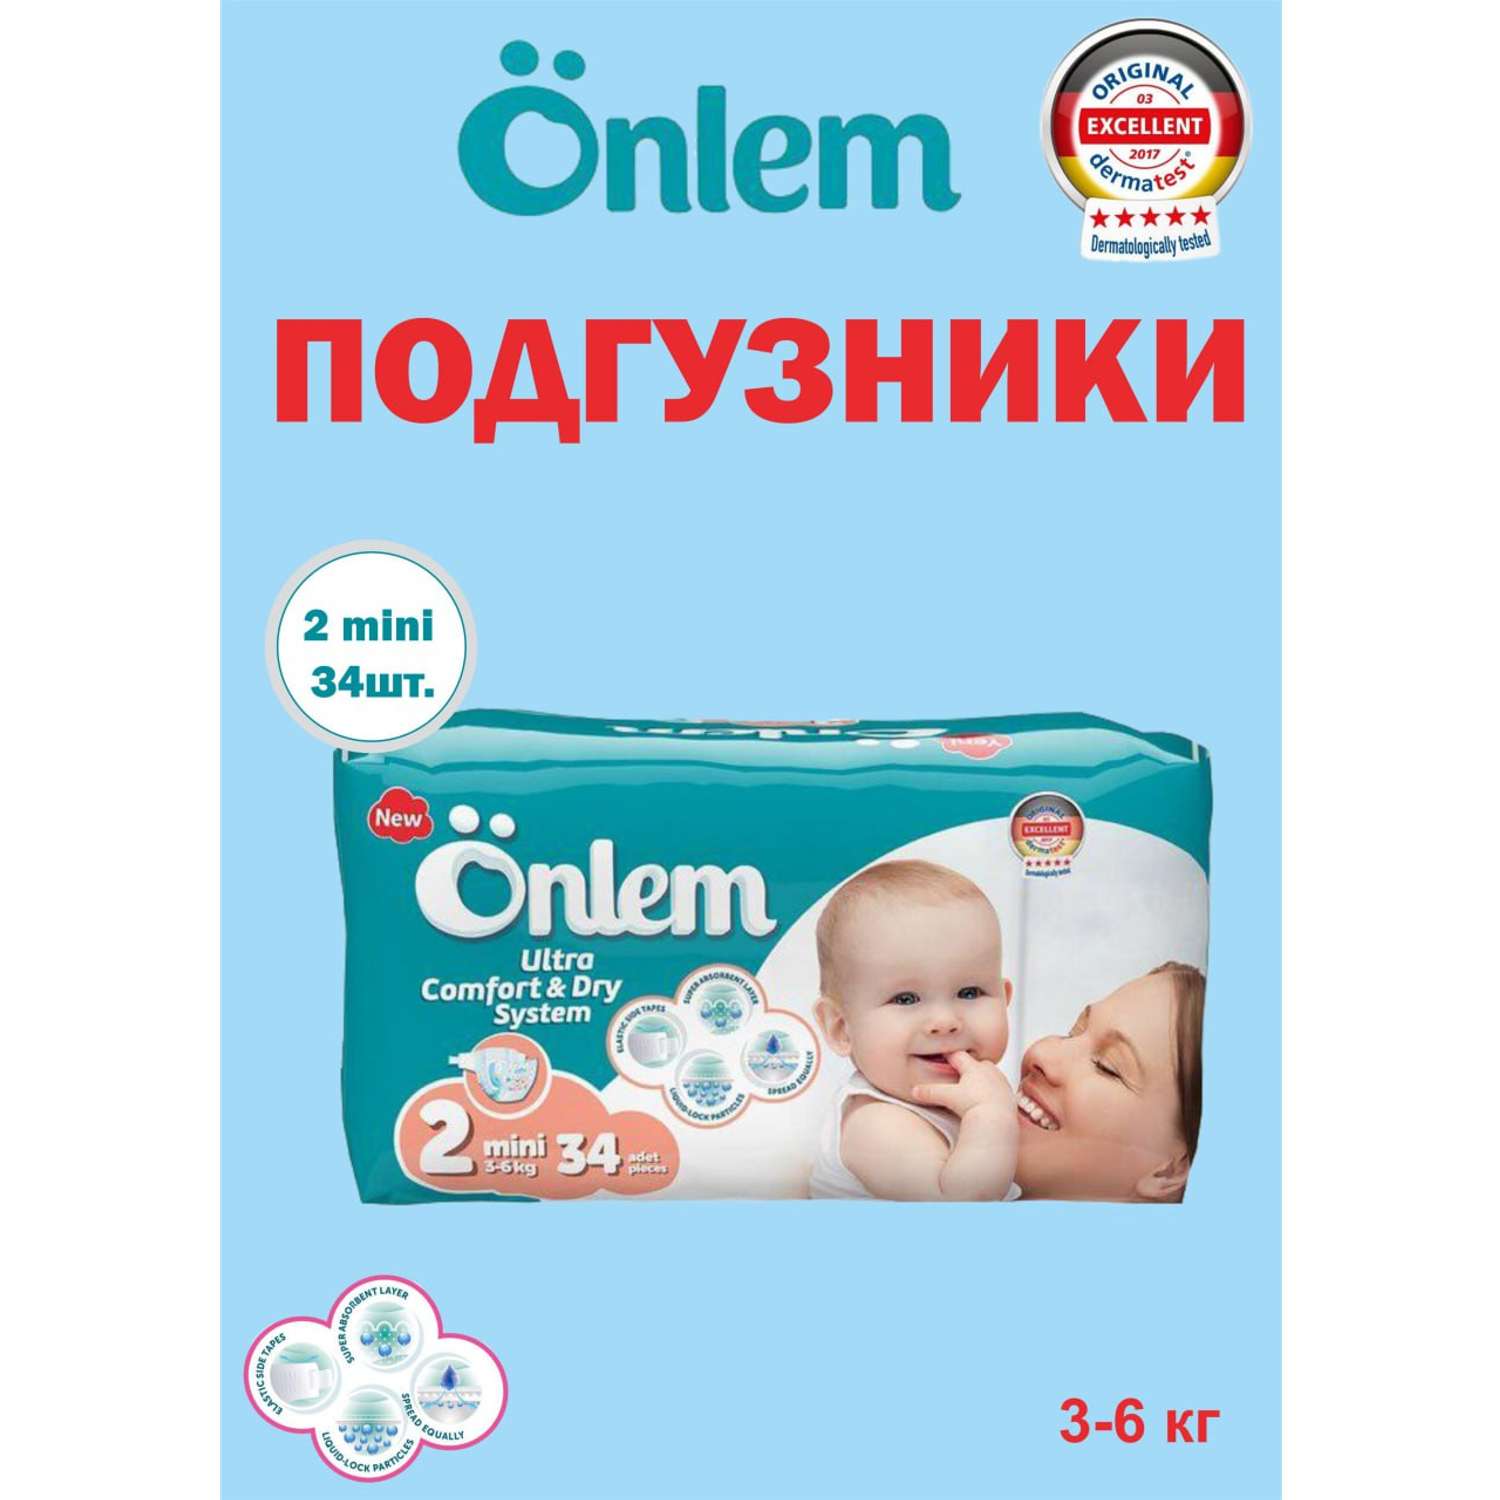 Детские подгузники Onlem Classik 2 (3-6 кг) advantage 34 шт в упаковке - фото 7